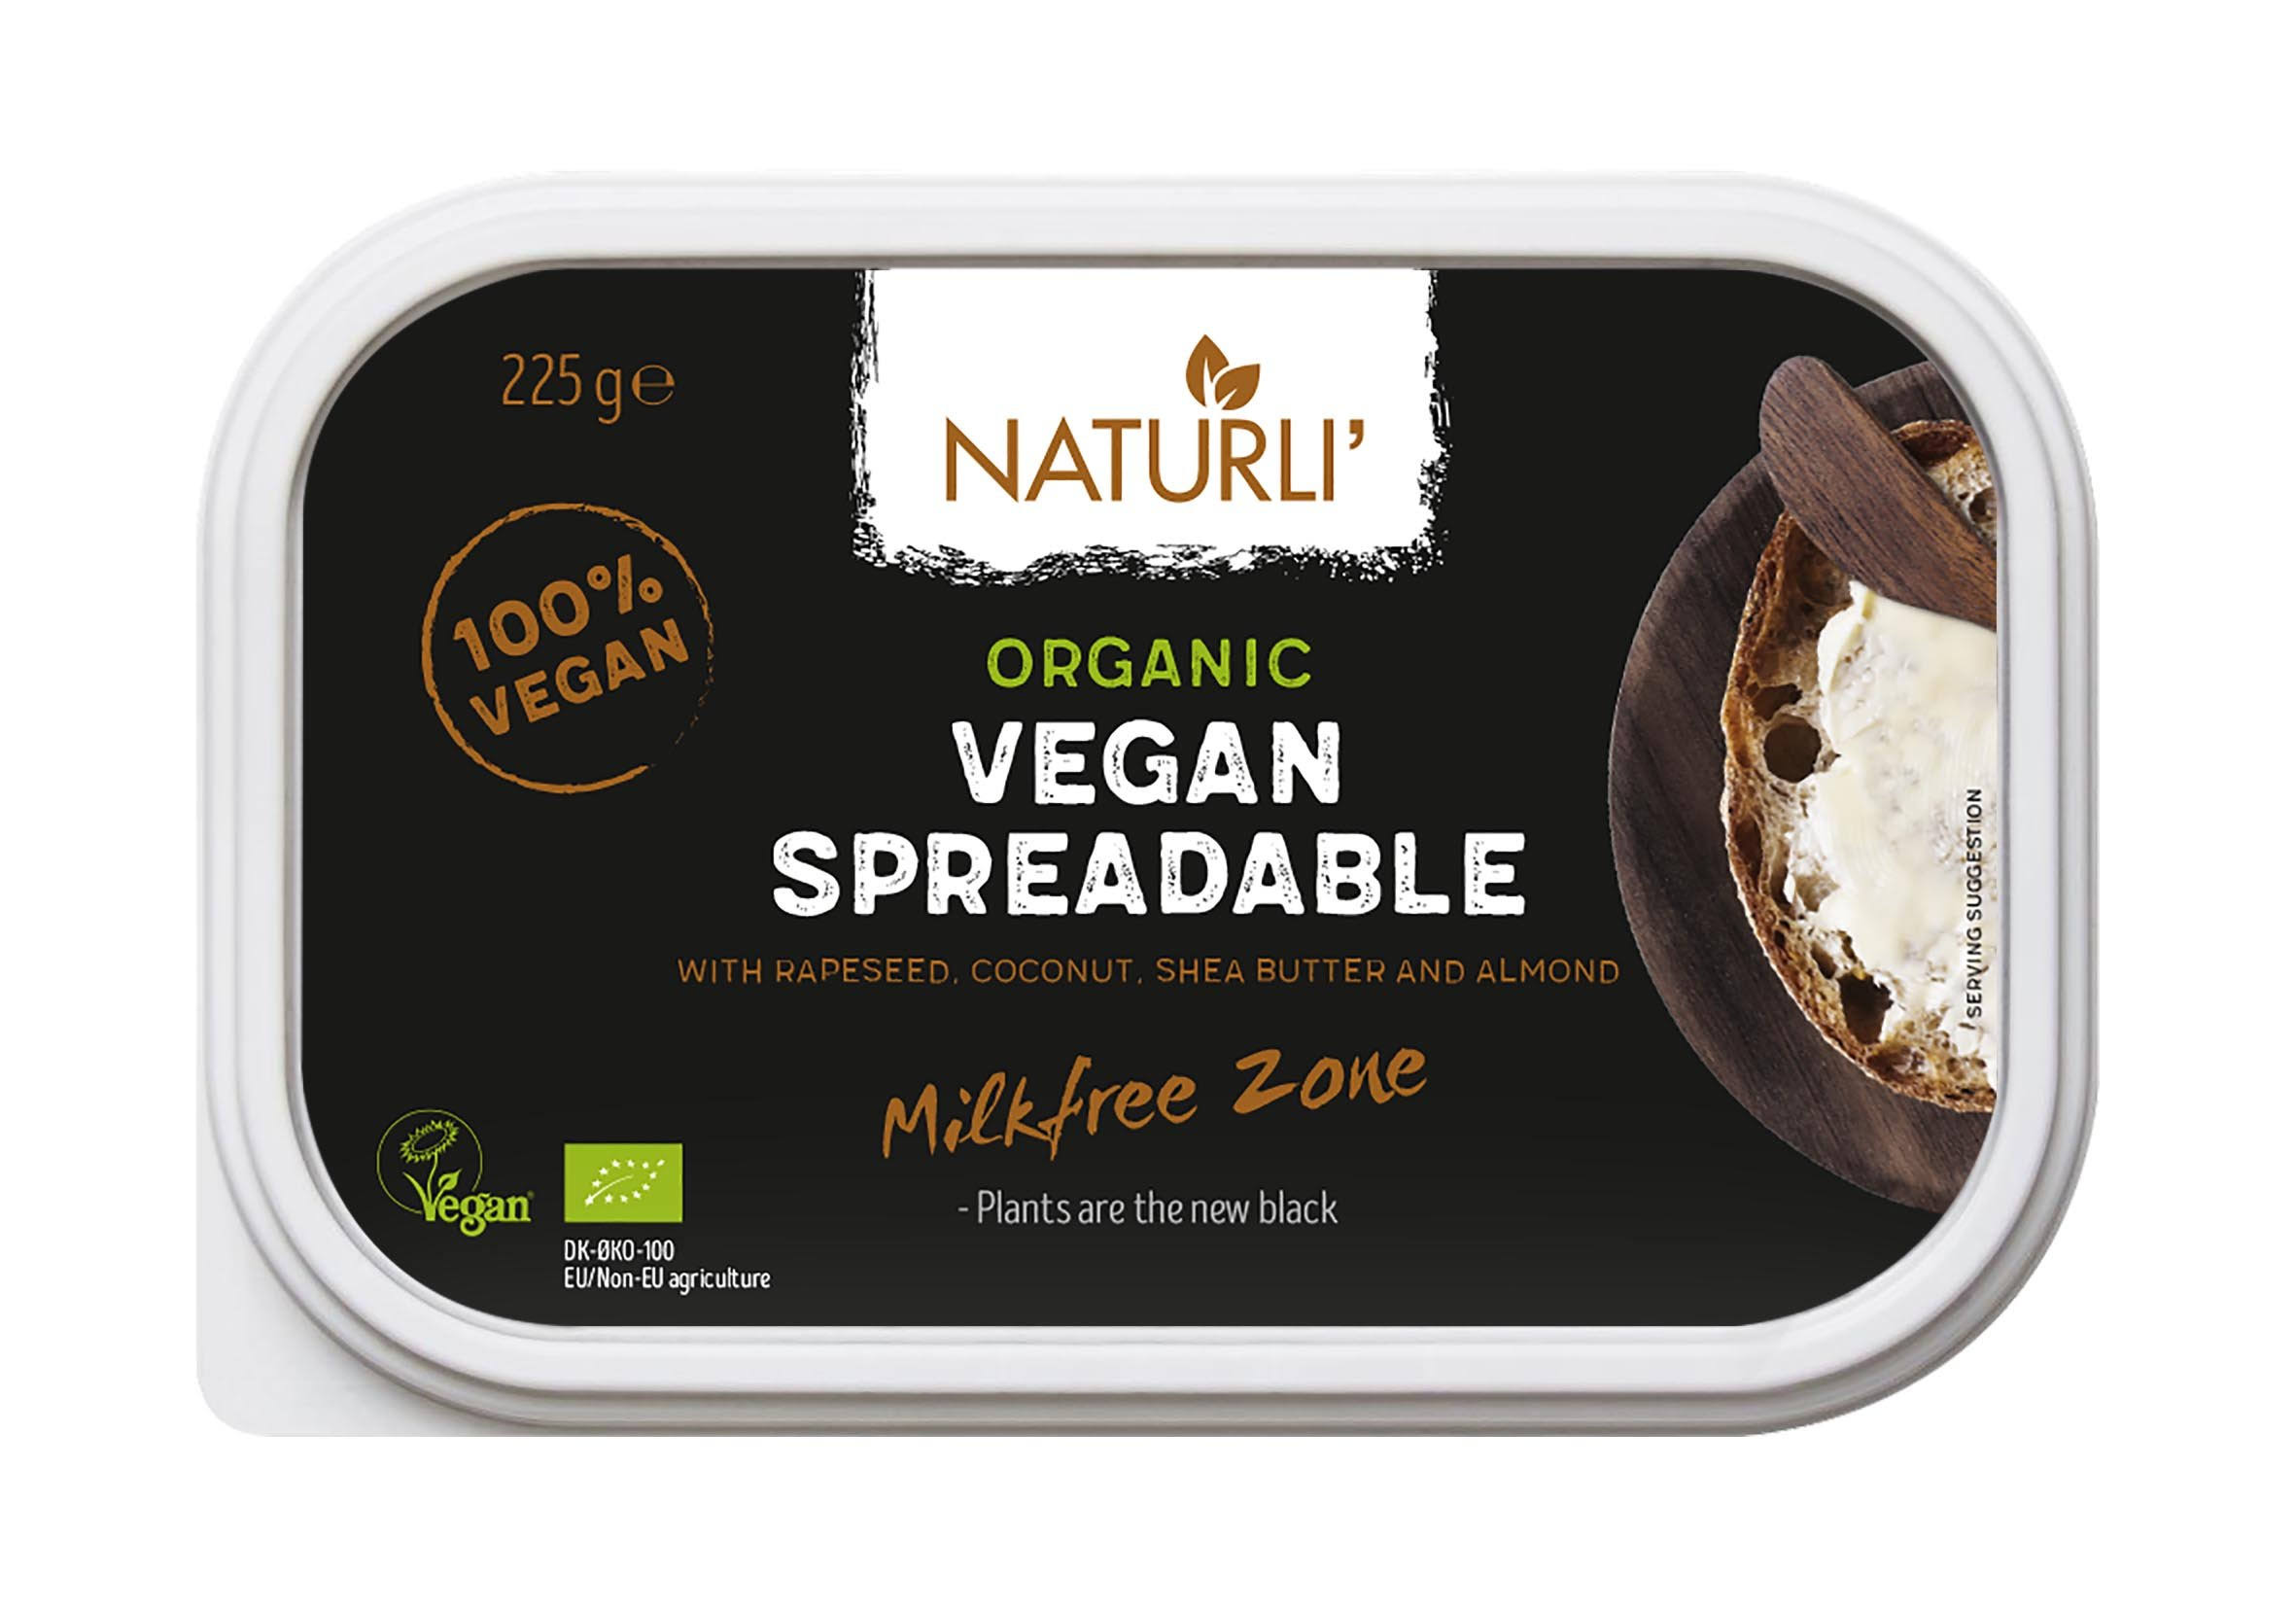 Naturli Spreadable Vegan Butter - 225g (Best Before 14.06.21)